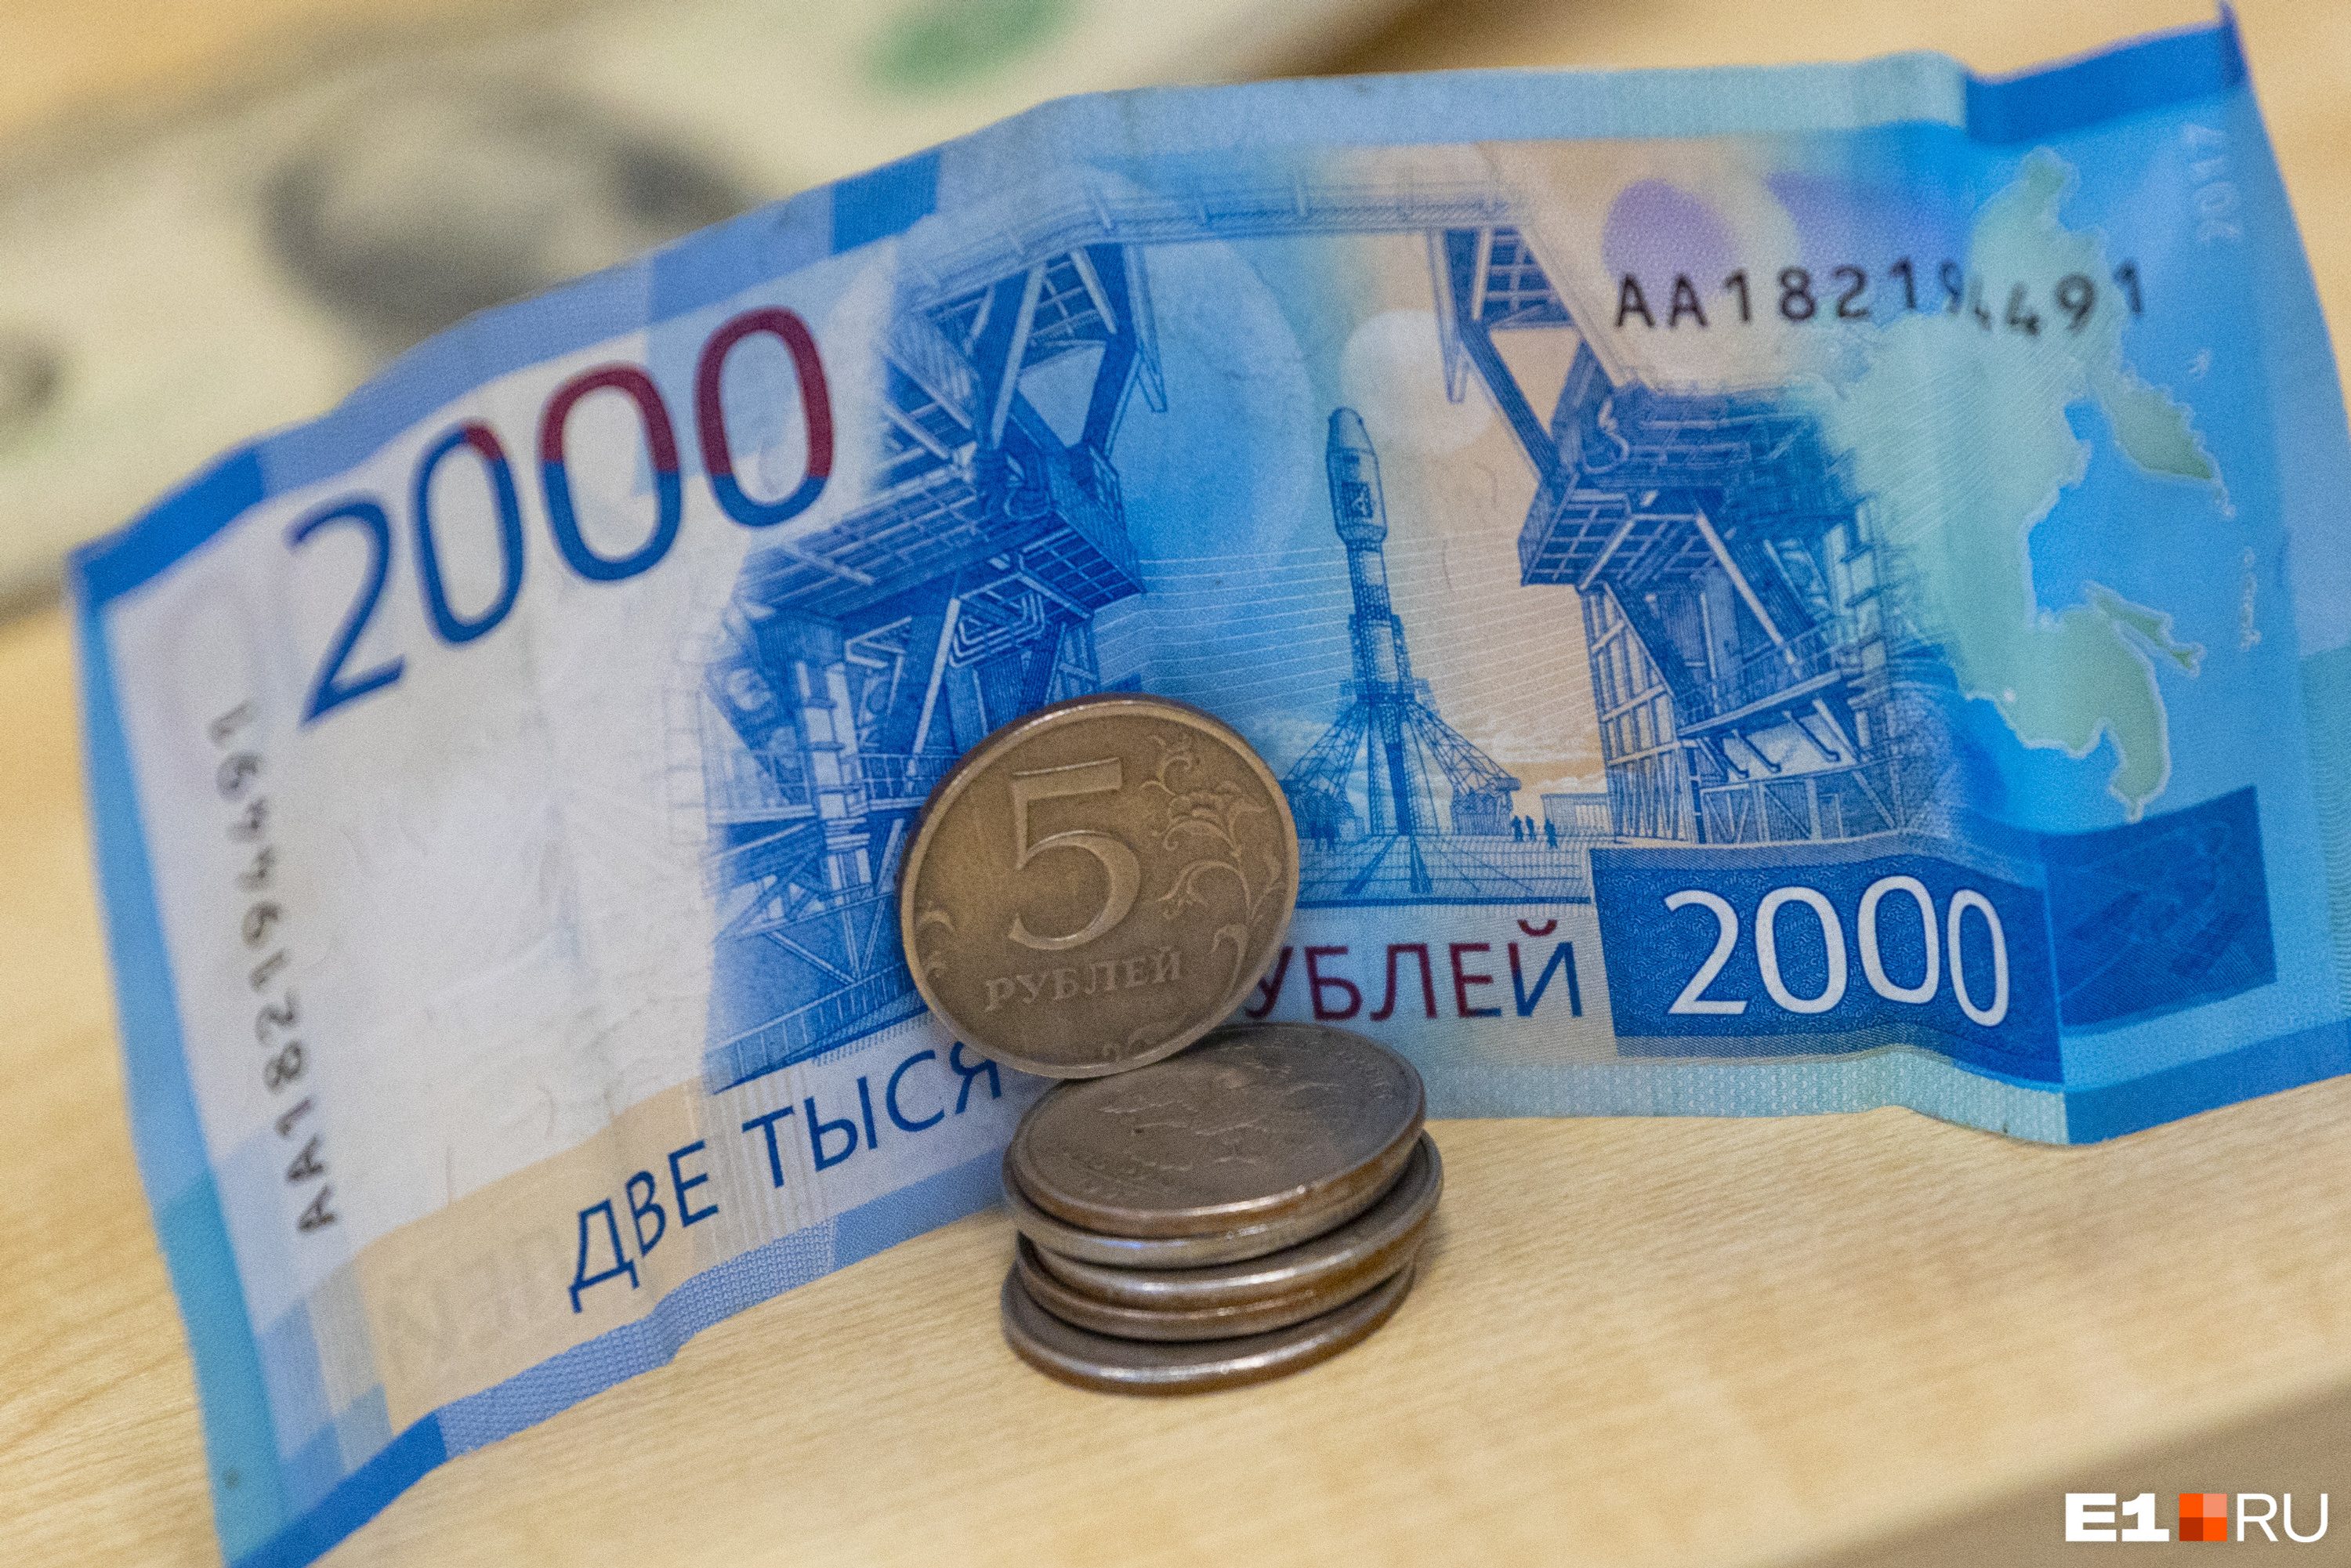 Екатеринбургский бизнесмен попытался сэкономить 2 миллиона рублей. Получилось очень плохо